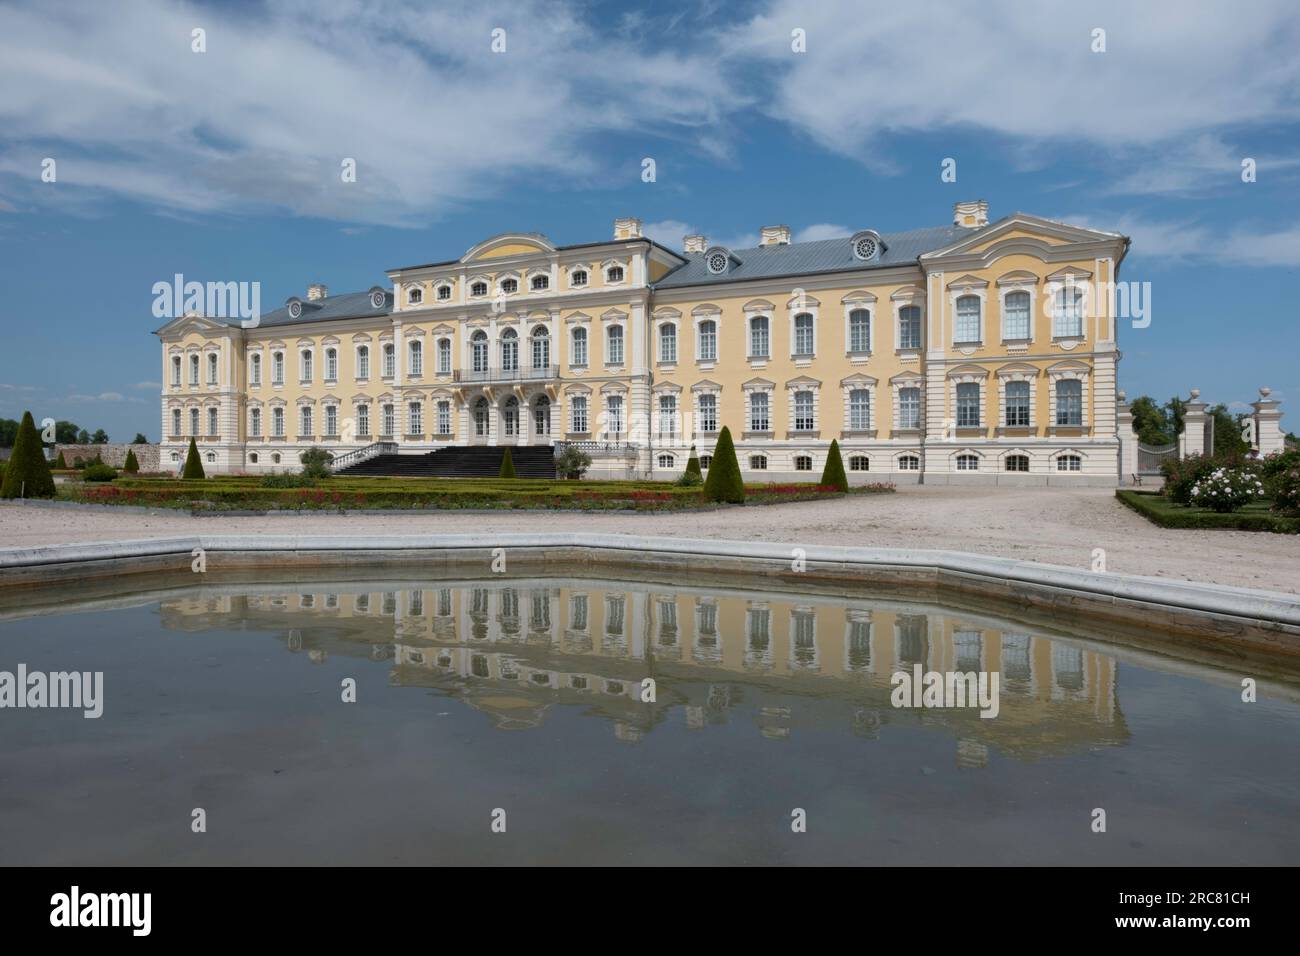 Palazzo Rundāle nel comune di Bauska in Lettonia. Edificio giallo barocco riflesso nell'acqua dello stagno. Famosa attrazione turistica Foto Stock